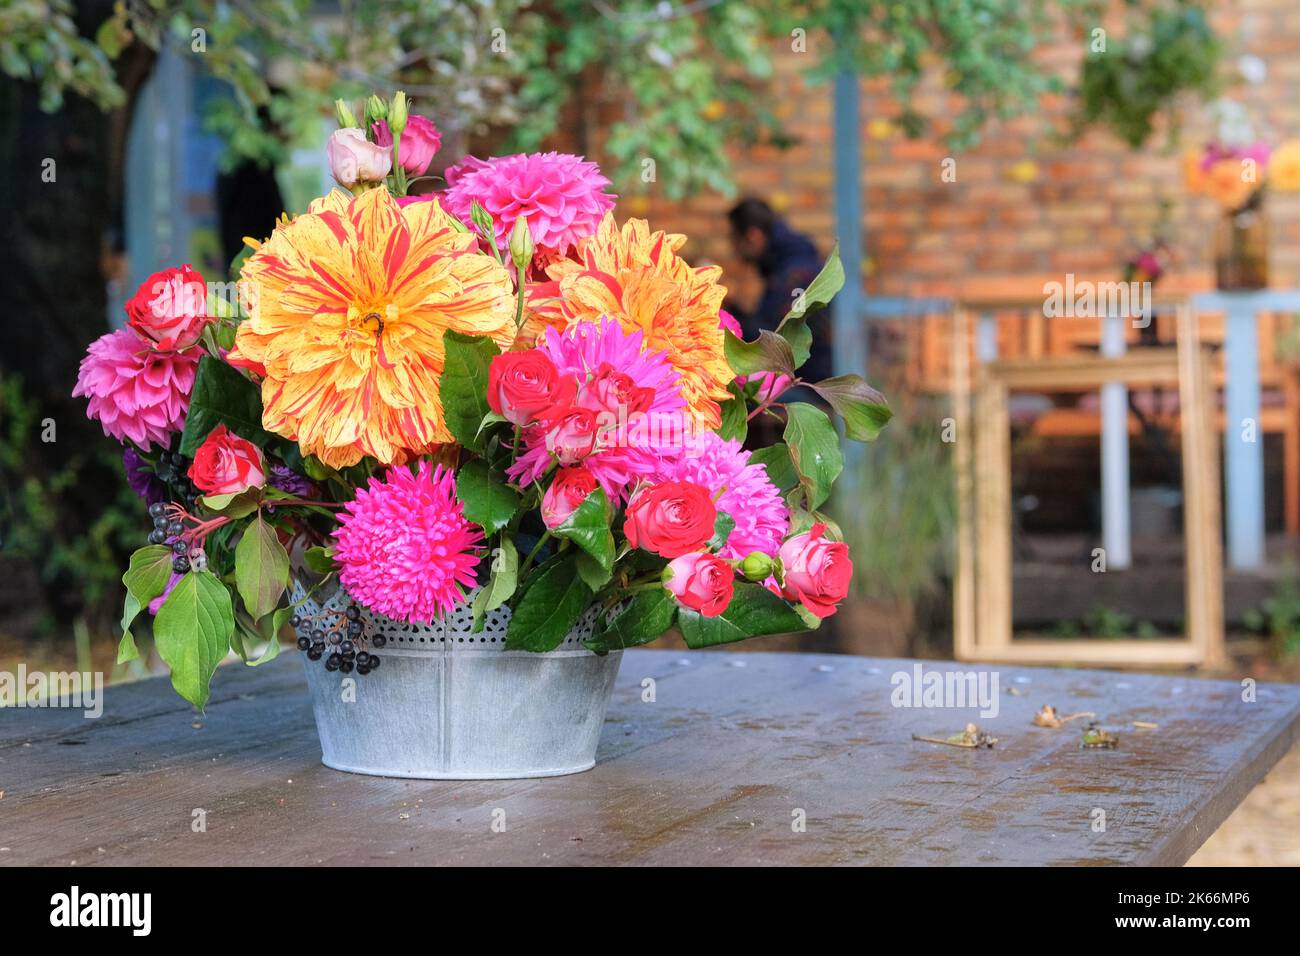 Rosen, Aster, Dahilia in Vase im Garten auf einem Holztisch. Sonniger Tag. Helles, ländliches Design. Stockfoto